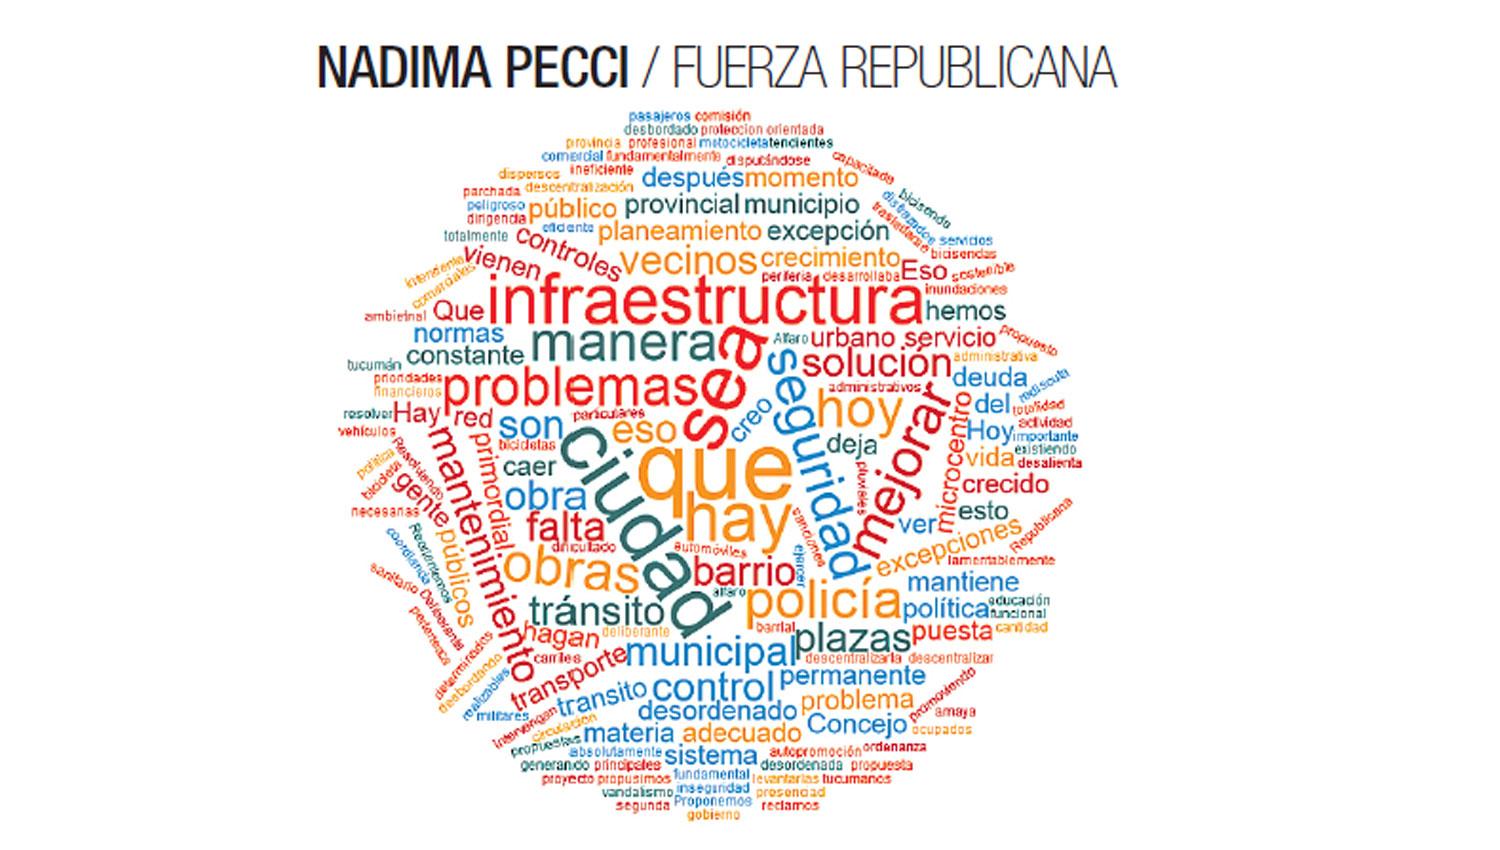 Nadima Pecci / Fuerza Republicana